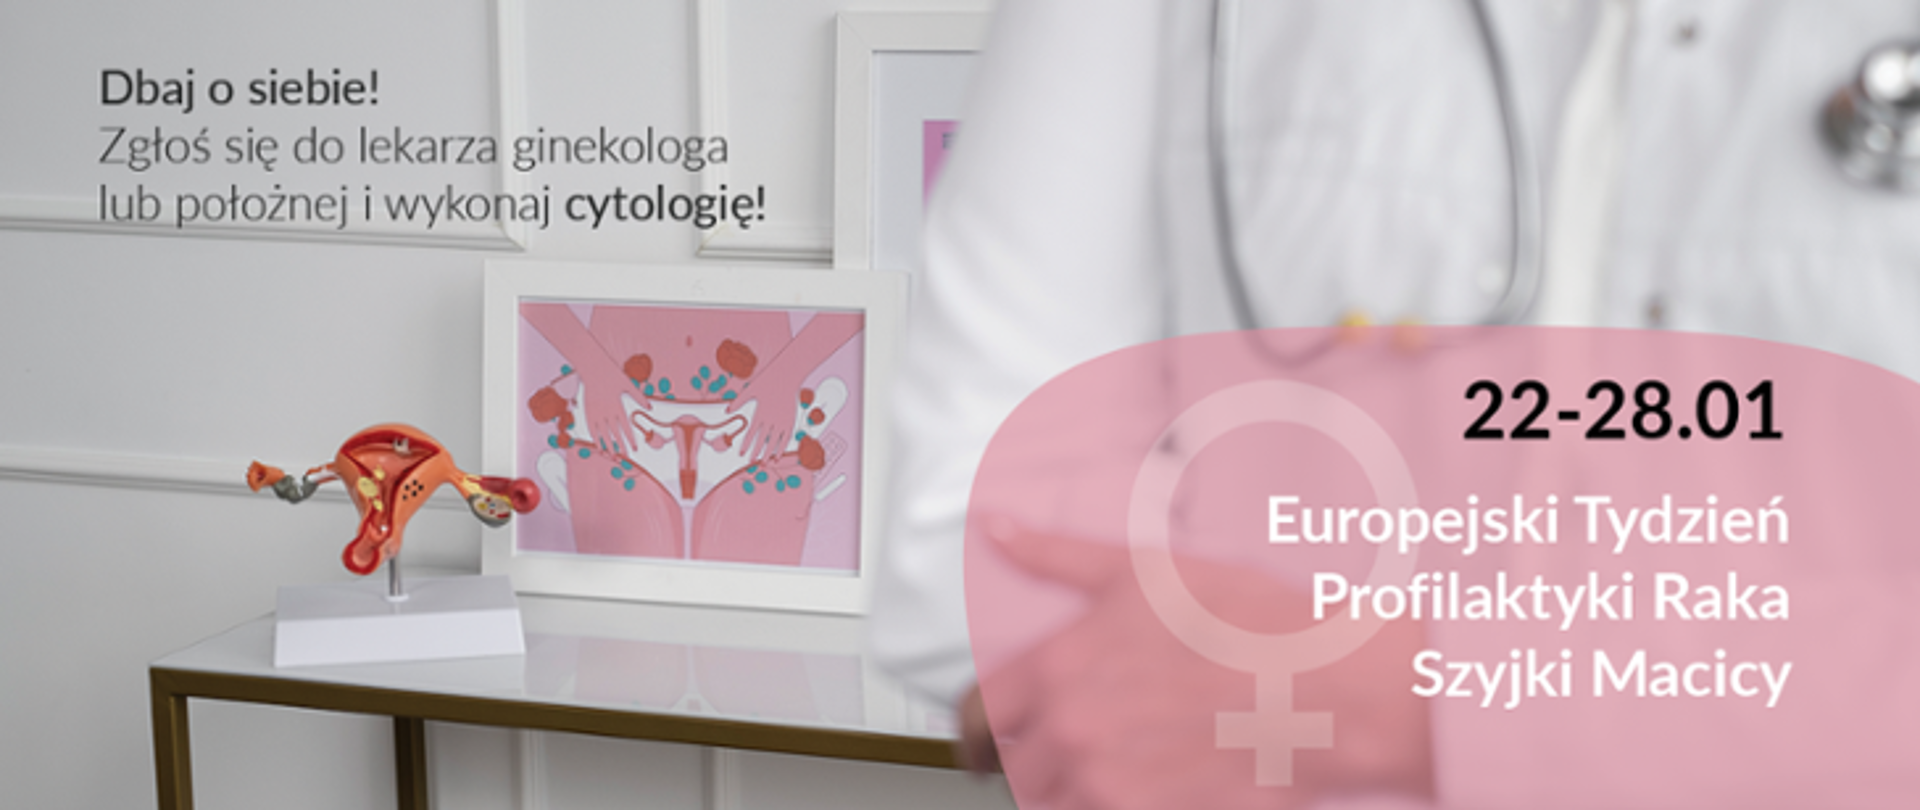 Na pierwszym planie, prawym rogu na dole widnieje napis: 22-28.01 Europejski Tydzień Profilaktyki Raka Szyjki Macicy. Na drugim planie, na stoliku znajduje się model macicy. 